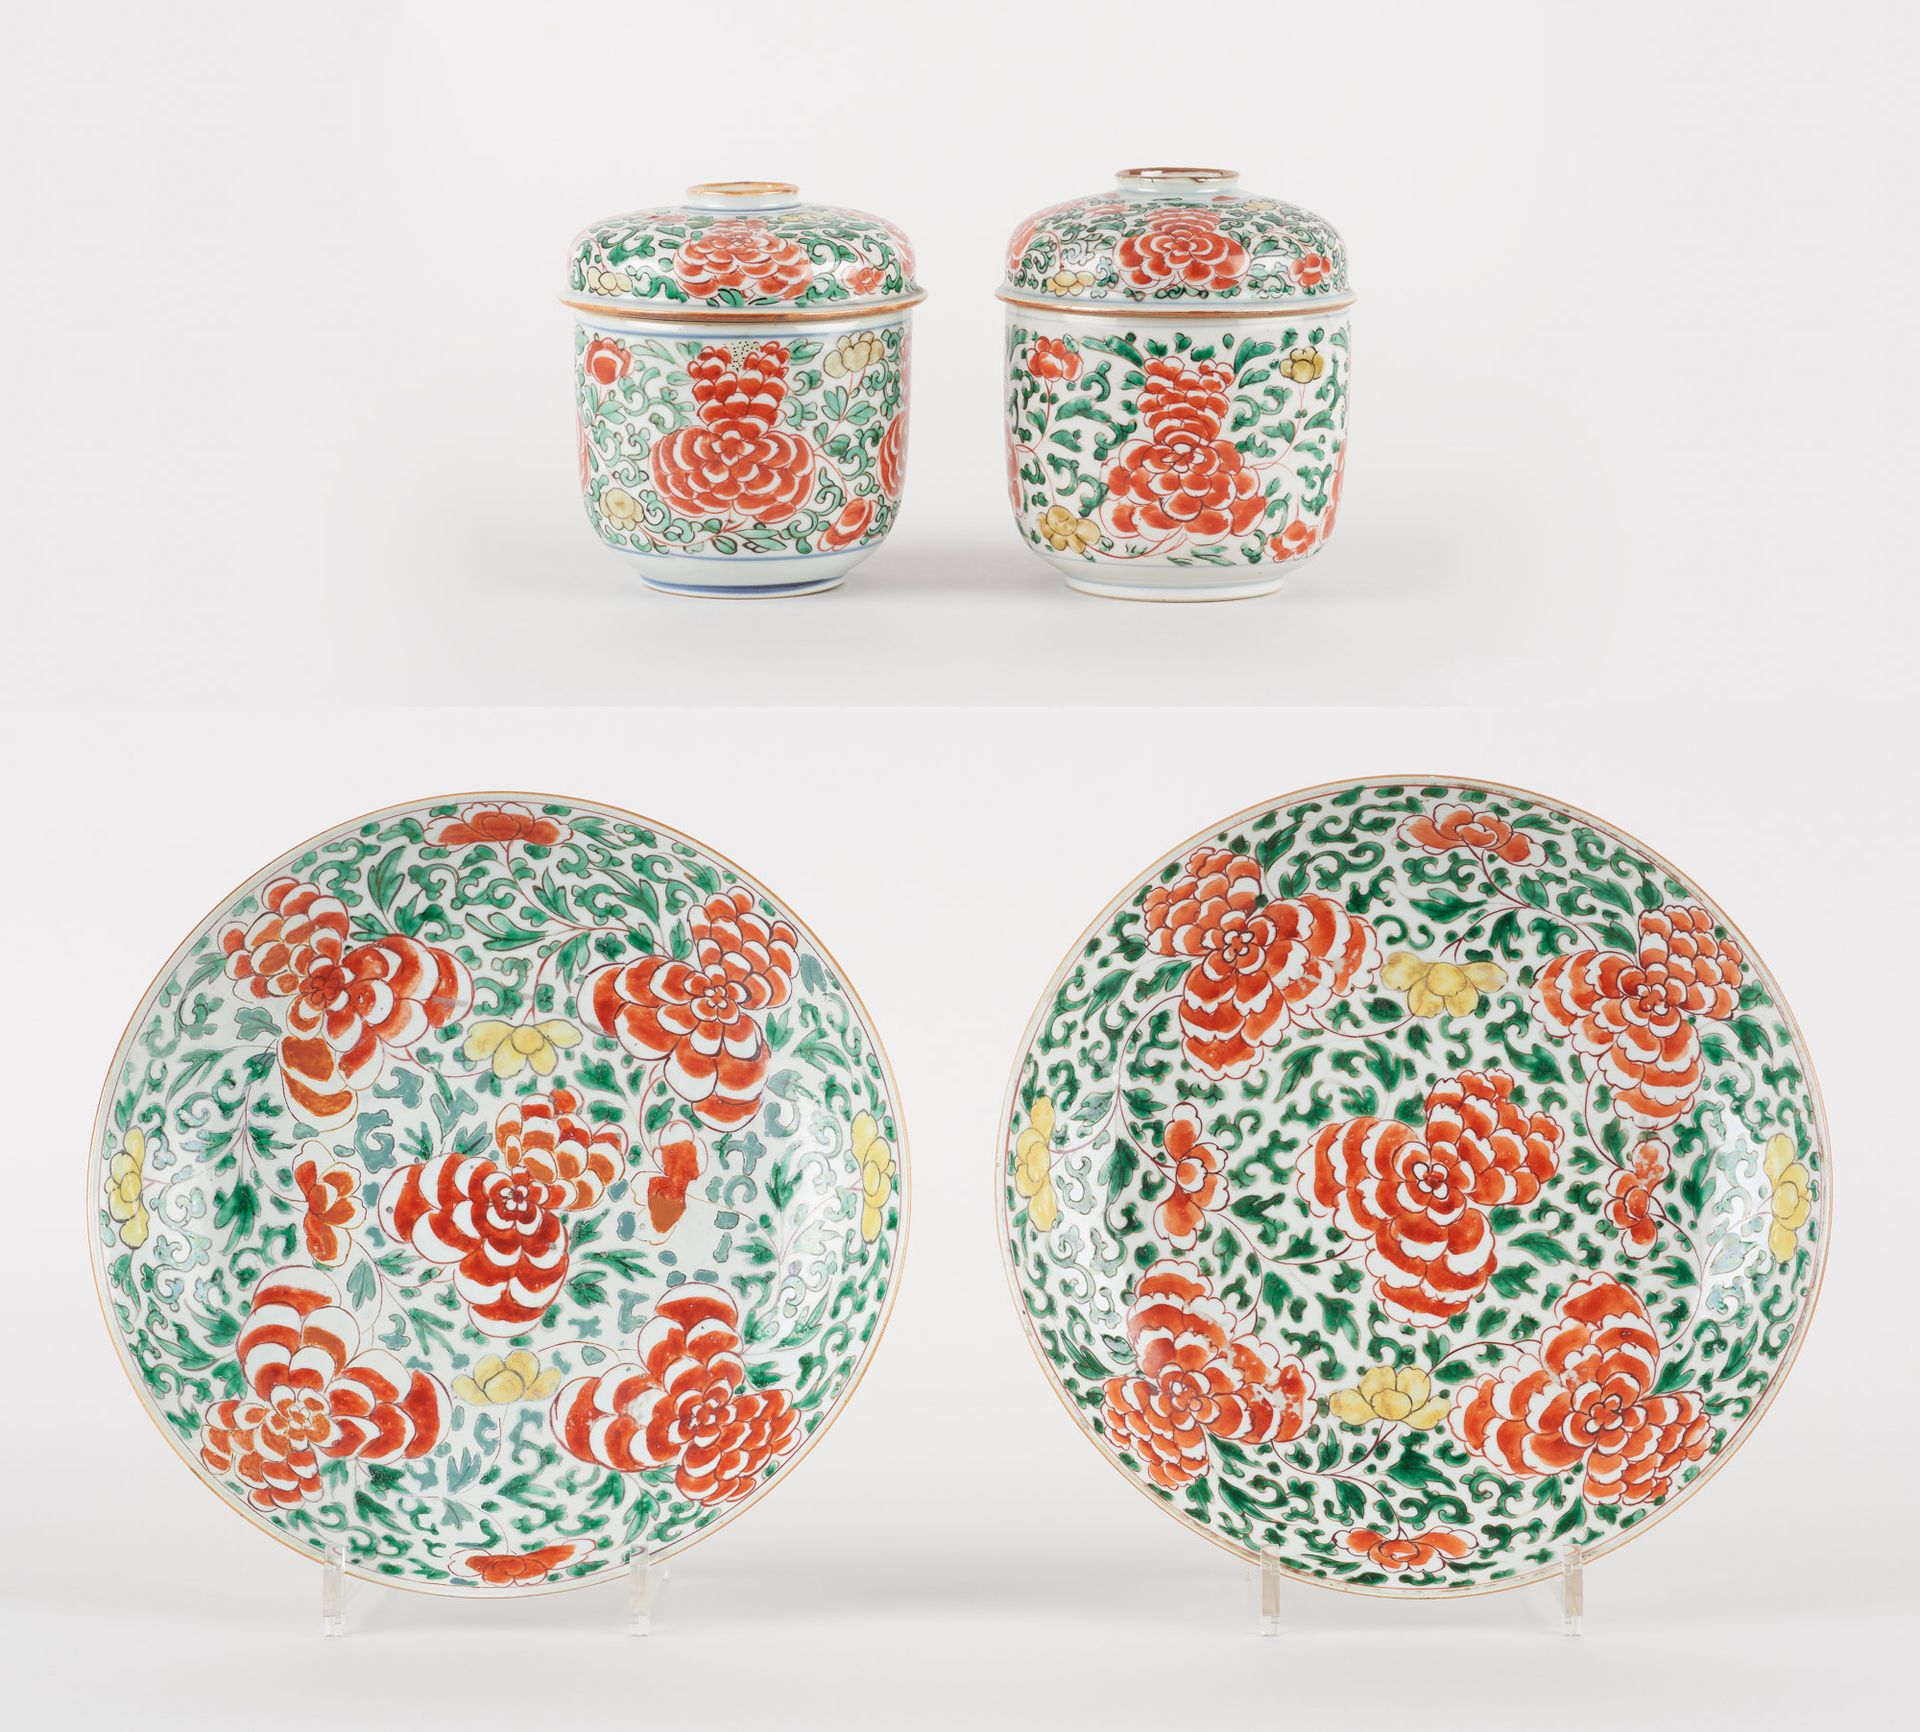 Travail chinois. 瓷器：拍品包括两个带花纹的多色瓷盘，绿色家庭和两个姜壶。

(事故和修复)。

尺寸：直径27，高15厘米。